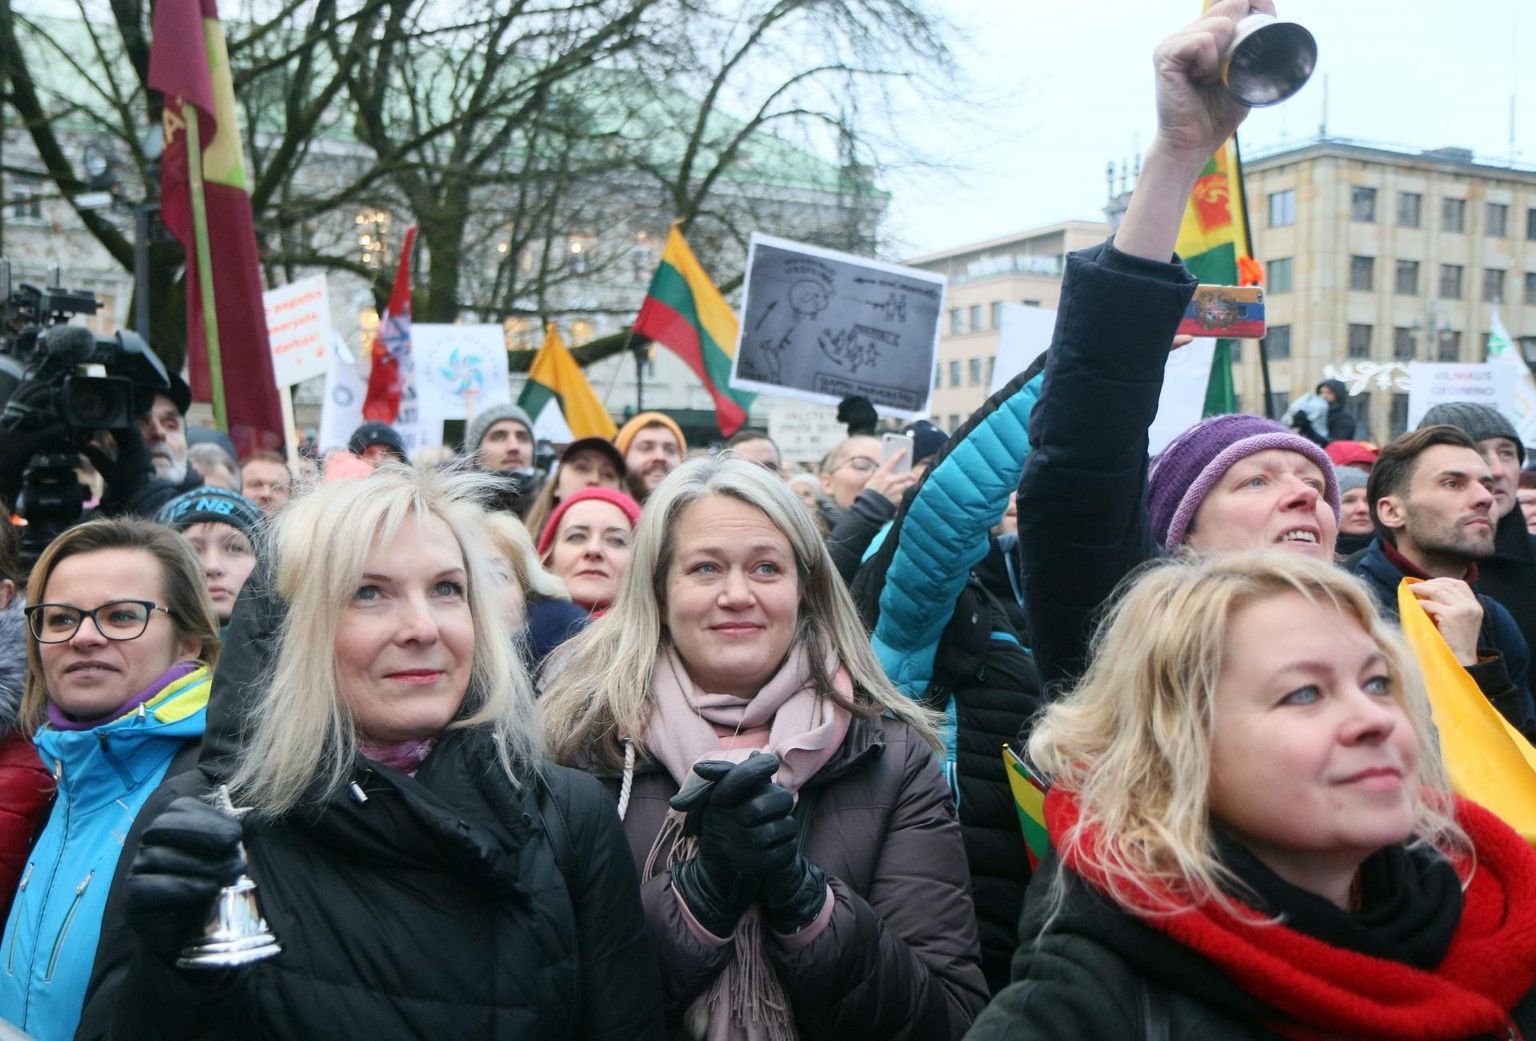 Eelmise aasta lõpus streikisid Leedu õpetajad mitu nädalat kehva palga tõttu. Vilniuse tänavatel liitusid nendega ka teiste elualade inimesed, kes pole rahul olukorraga hariduses.